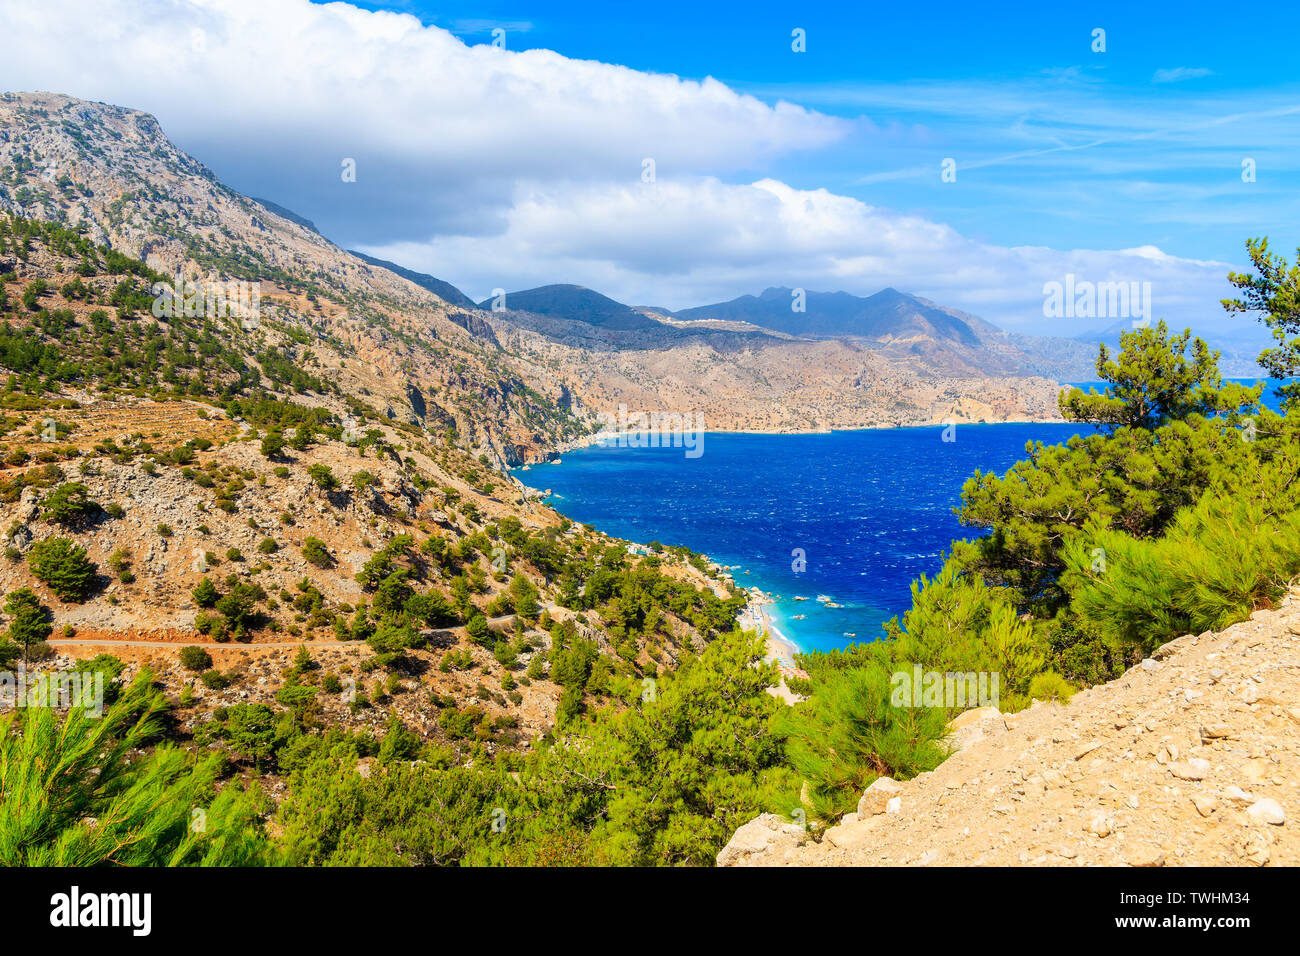 La côte de la mer de l'île de Karpathos et de montagnes, la Grèce Banque D'Images